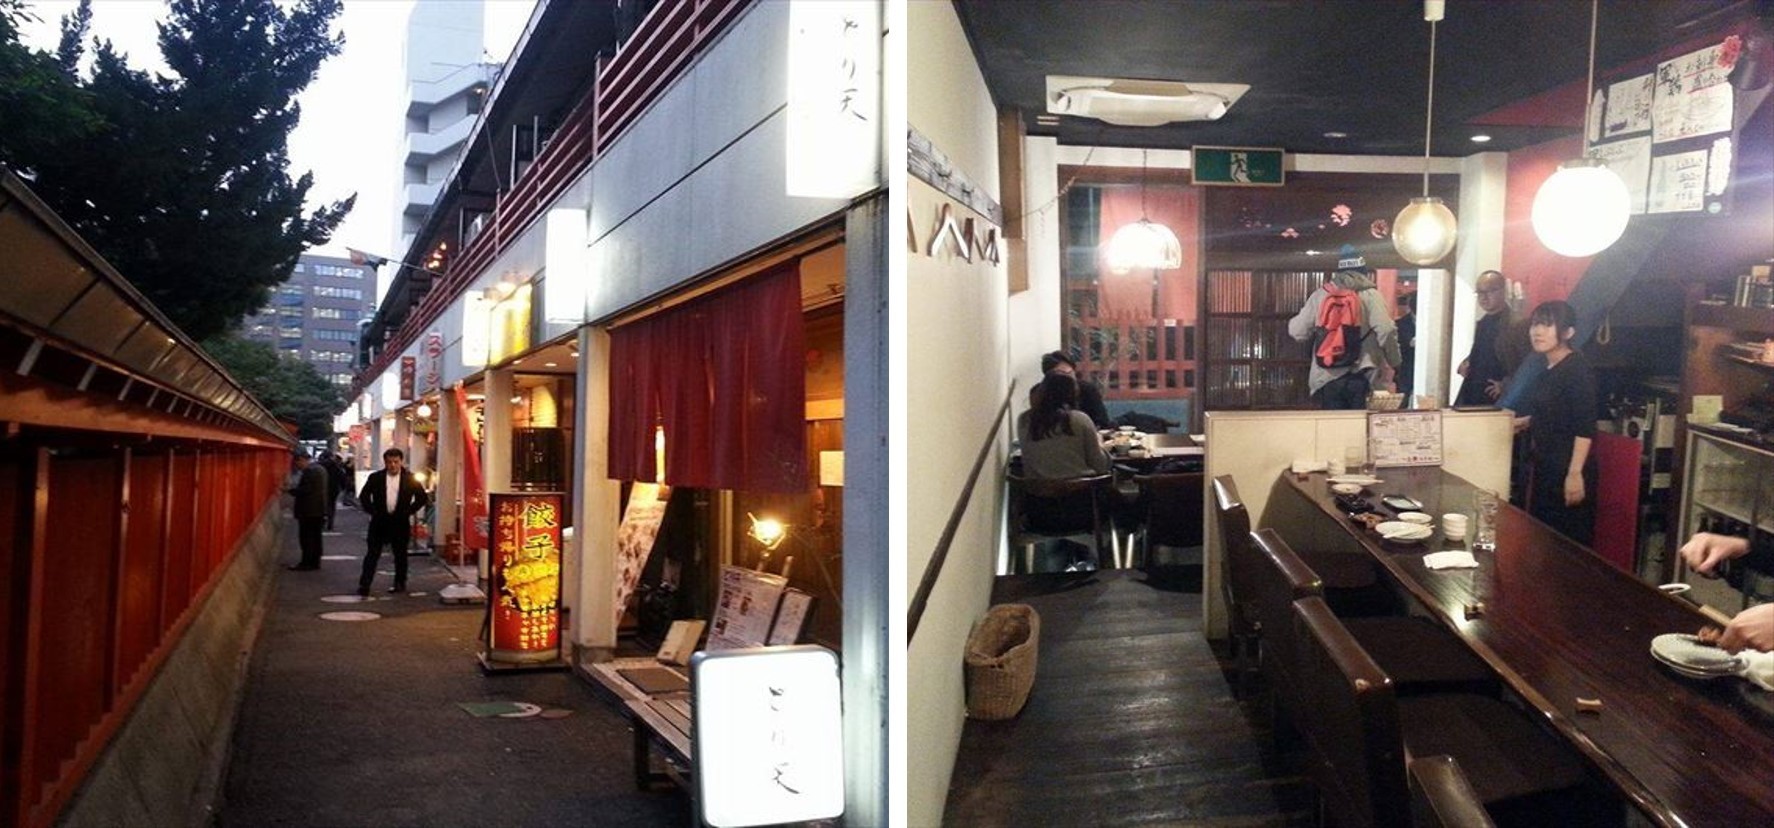 造訪福岡旅遊時推薦的3間居酒屋餐廳